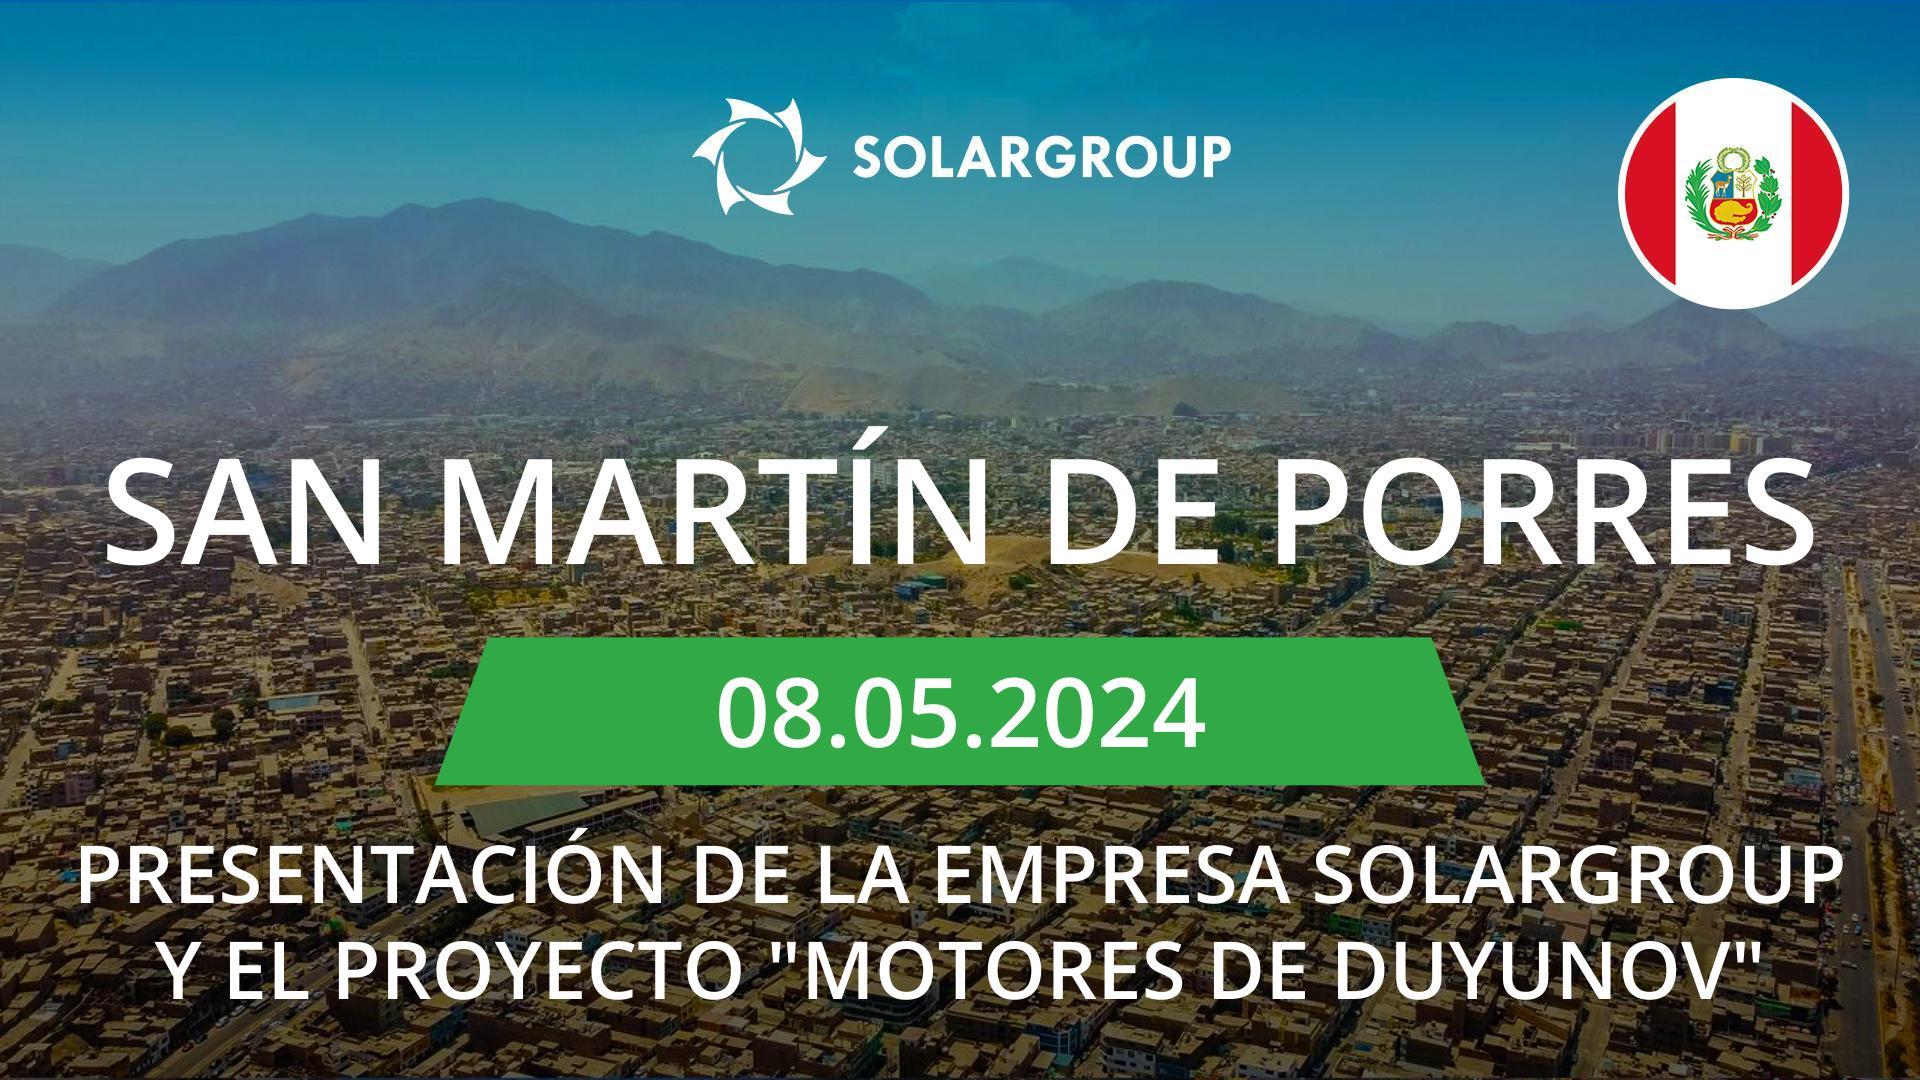 Presentación de la empresa SOLARGROUP y el proyecto "Motores de Duyunov" en Perú (San Martín de Porres)